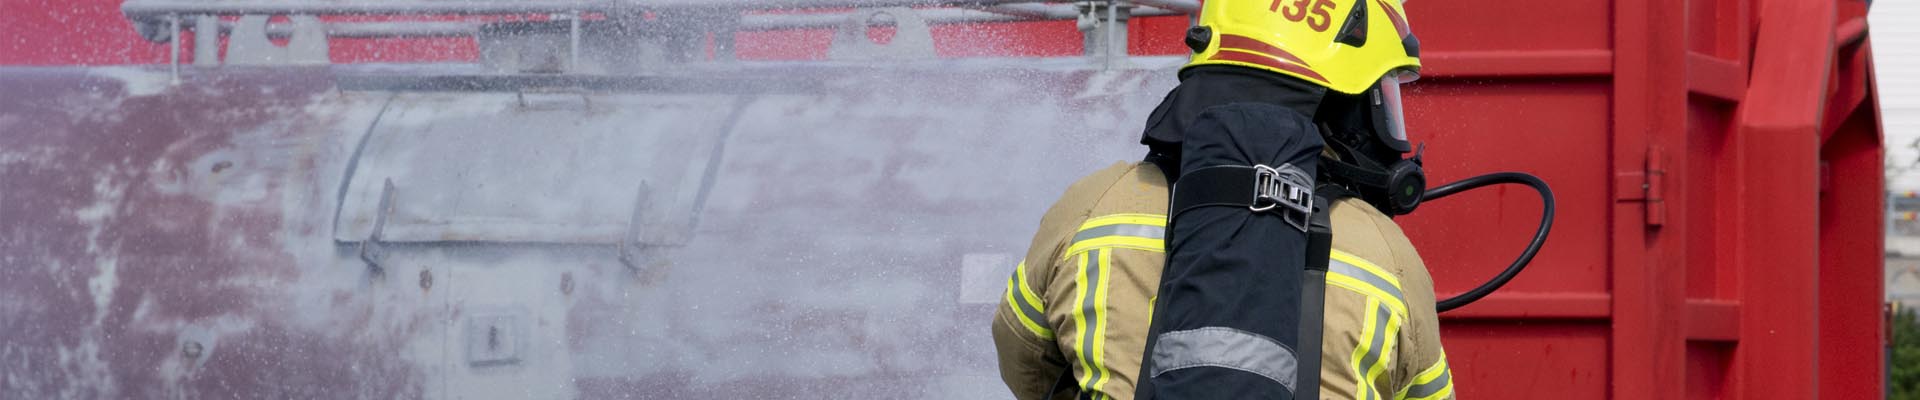 Palomies sammuttaa kemikaalisäiliötä sammutusletkulla toimintaharjoituksessa.